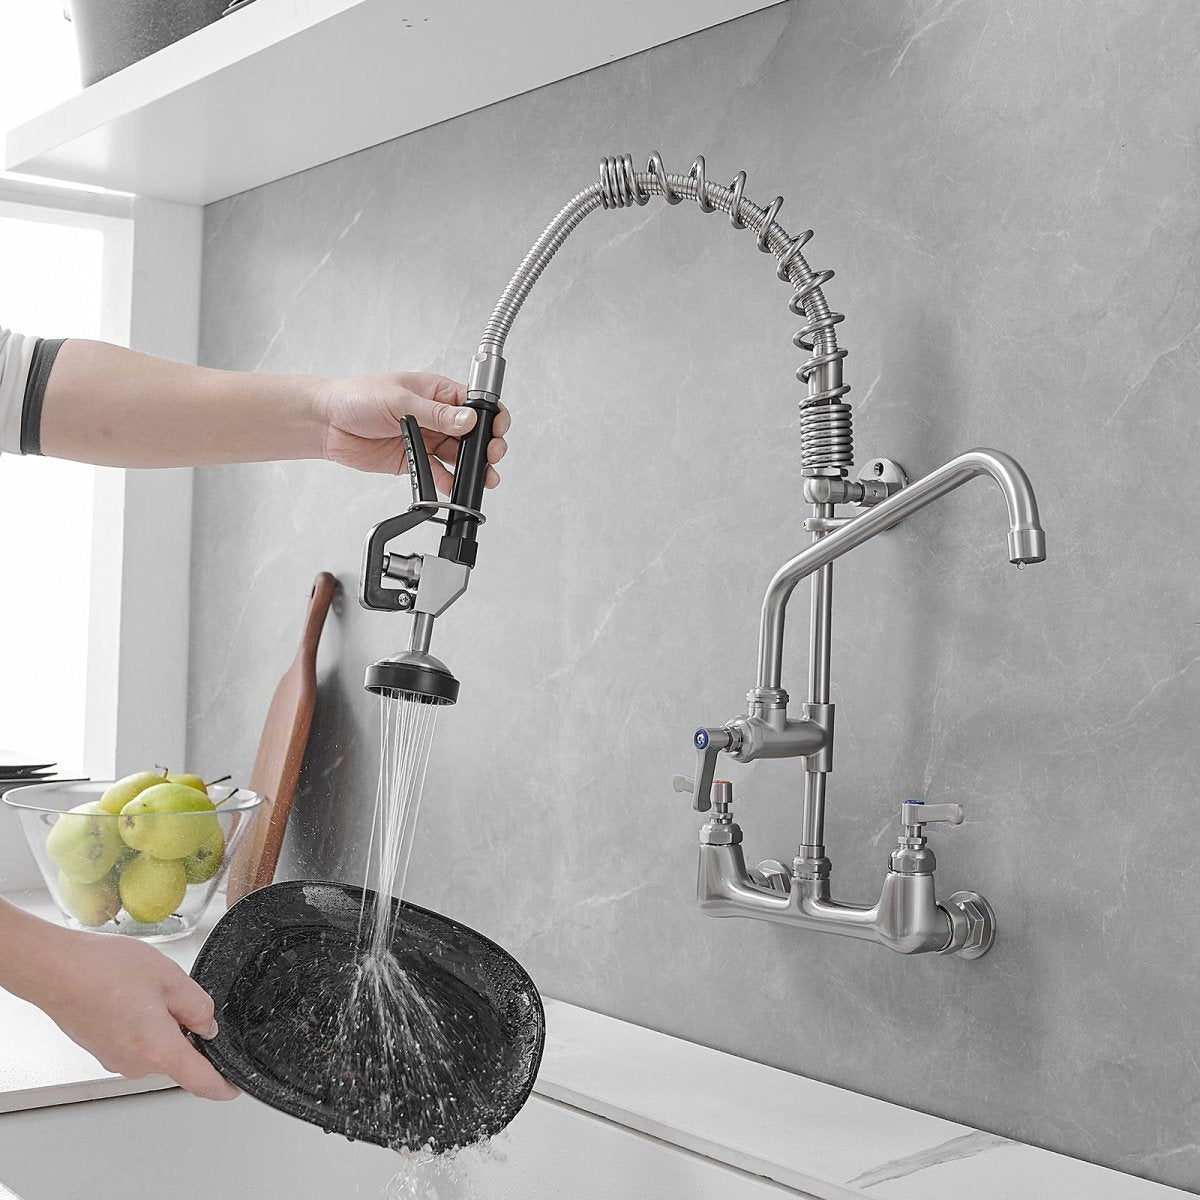 2-Handle Wall Mount Pre-Rinse Spray Kitchen Faucet Nickel - buyfaucet.com